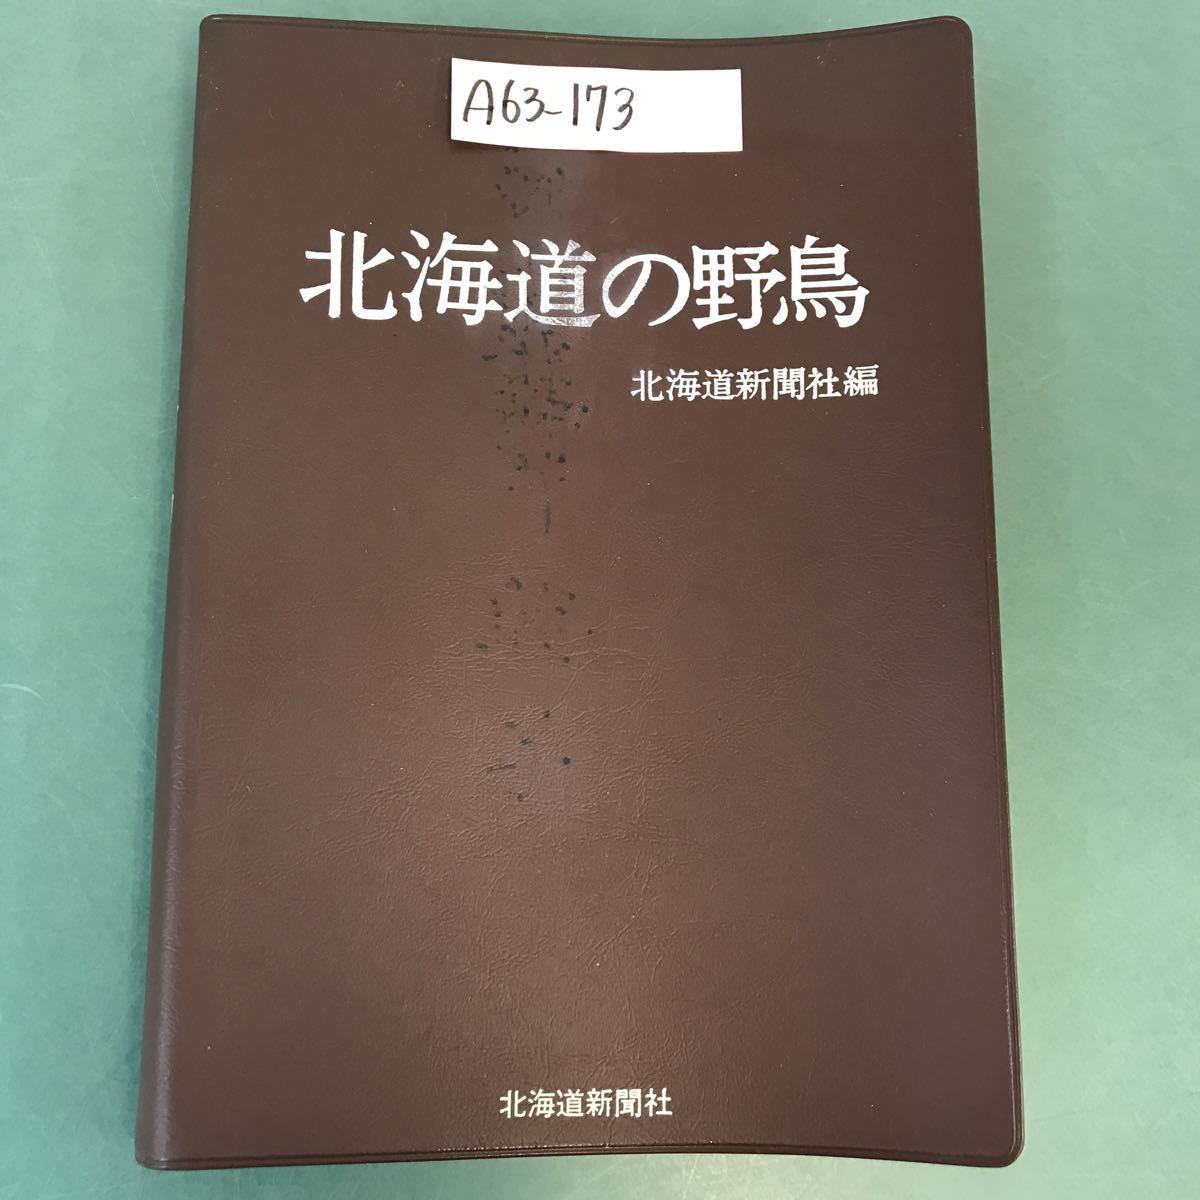 贅沢 A63-173 北海道の野鳥 北海道新聞社 編 生物学